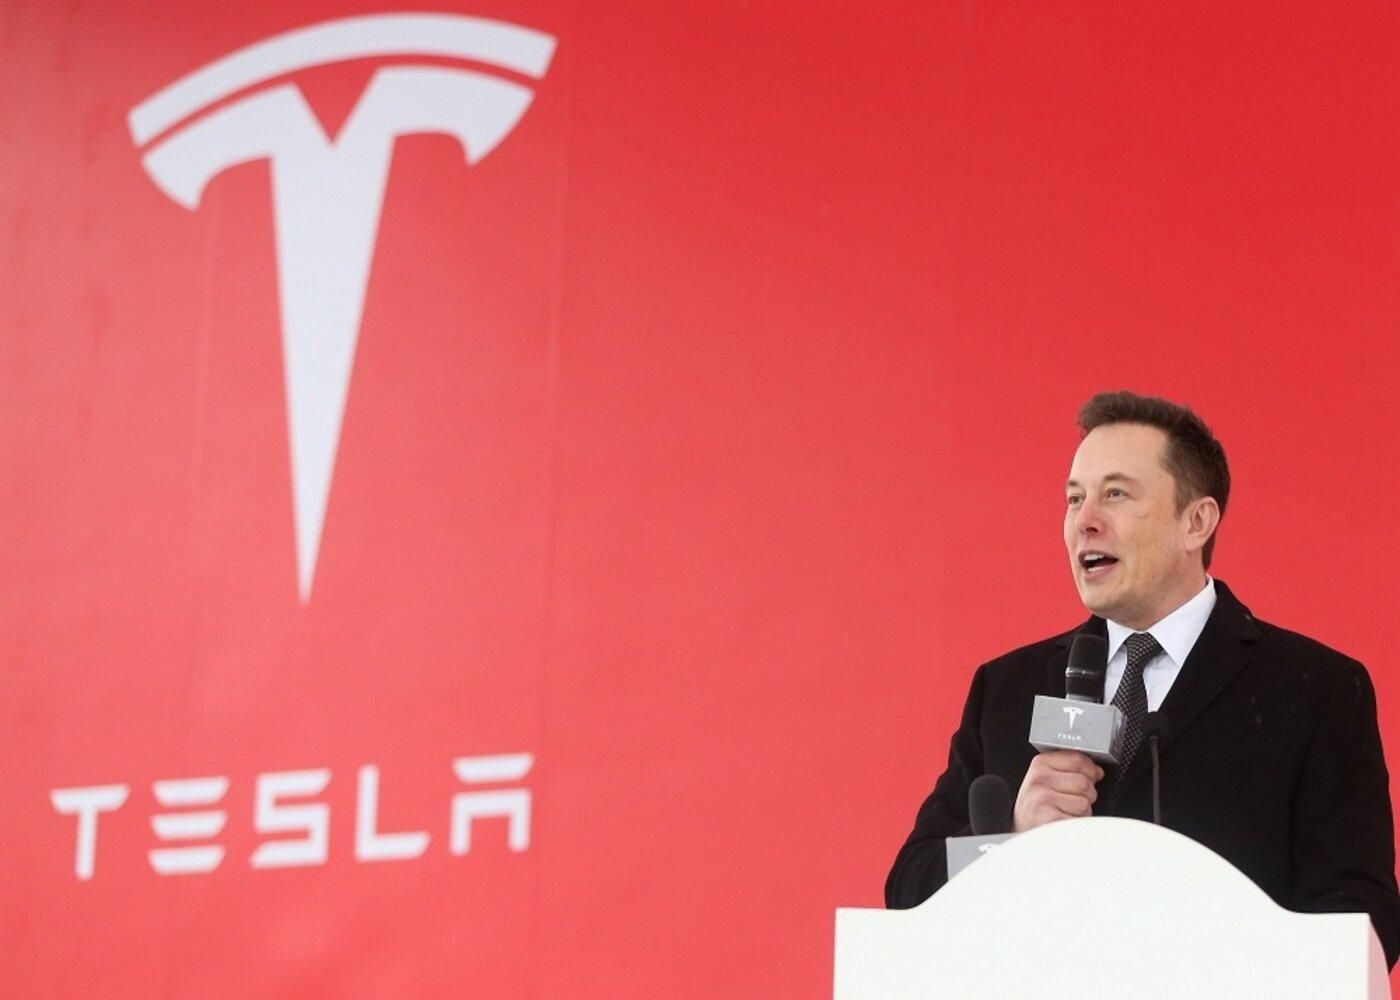 Капитализация Tesla достигла рекорда – акции подорожали